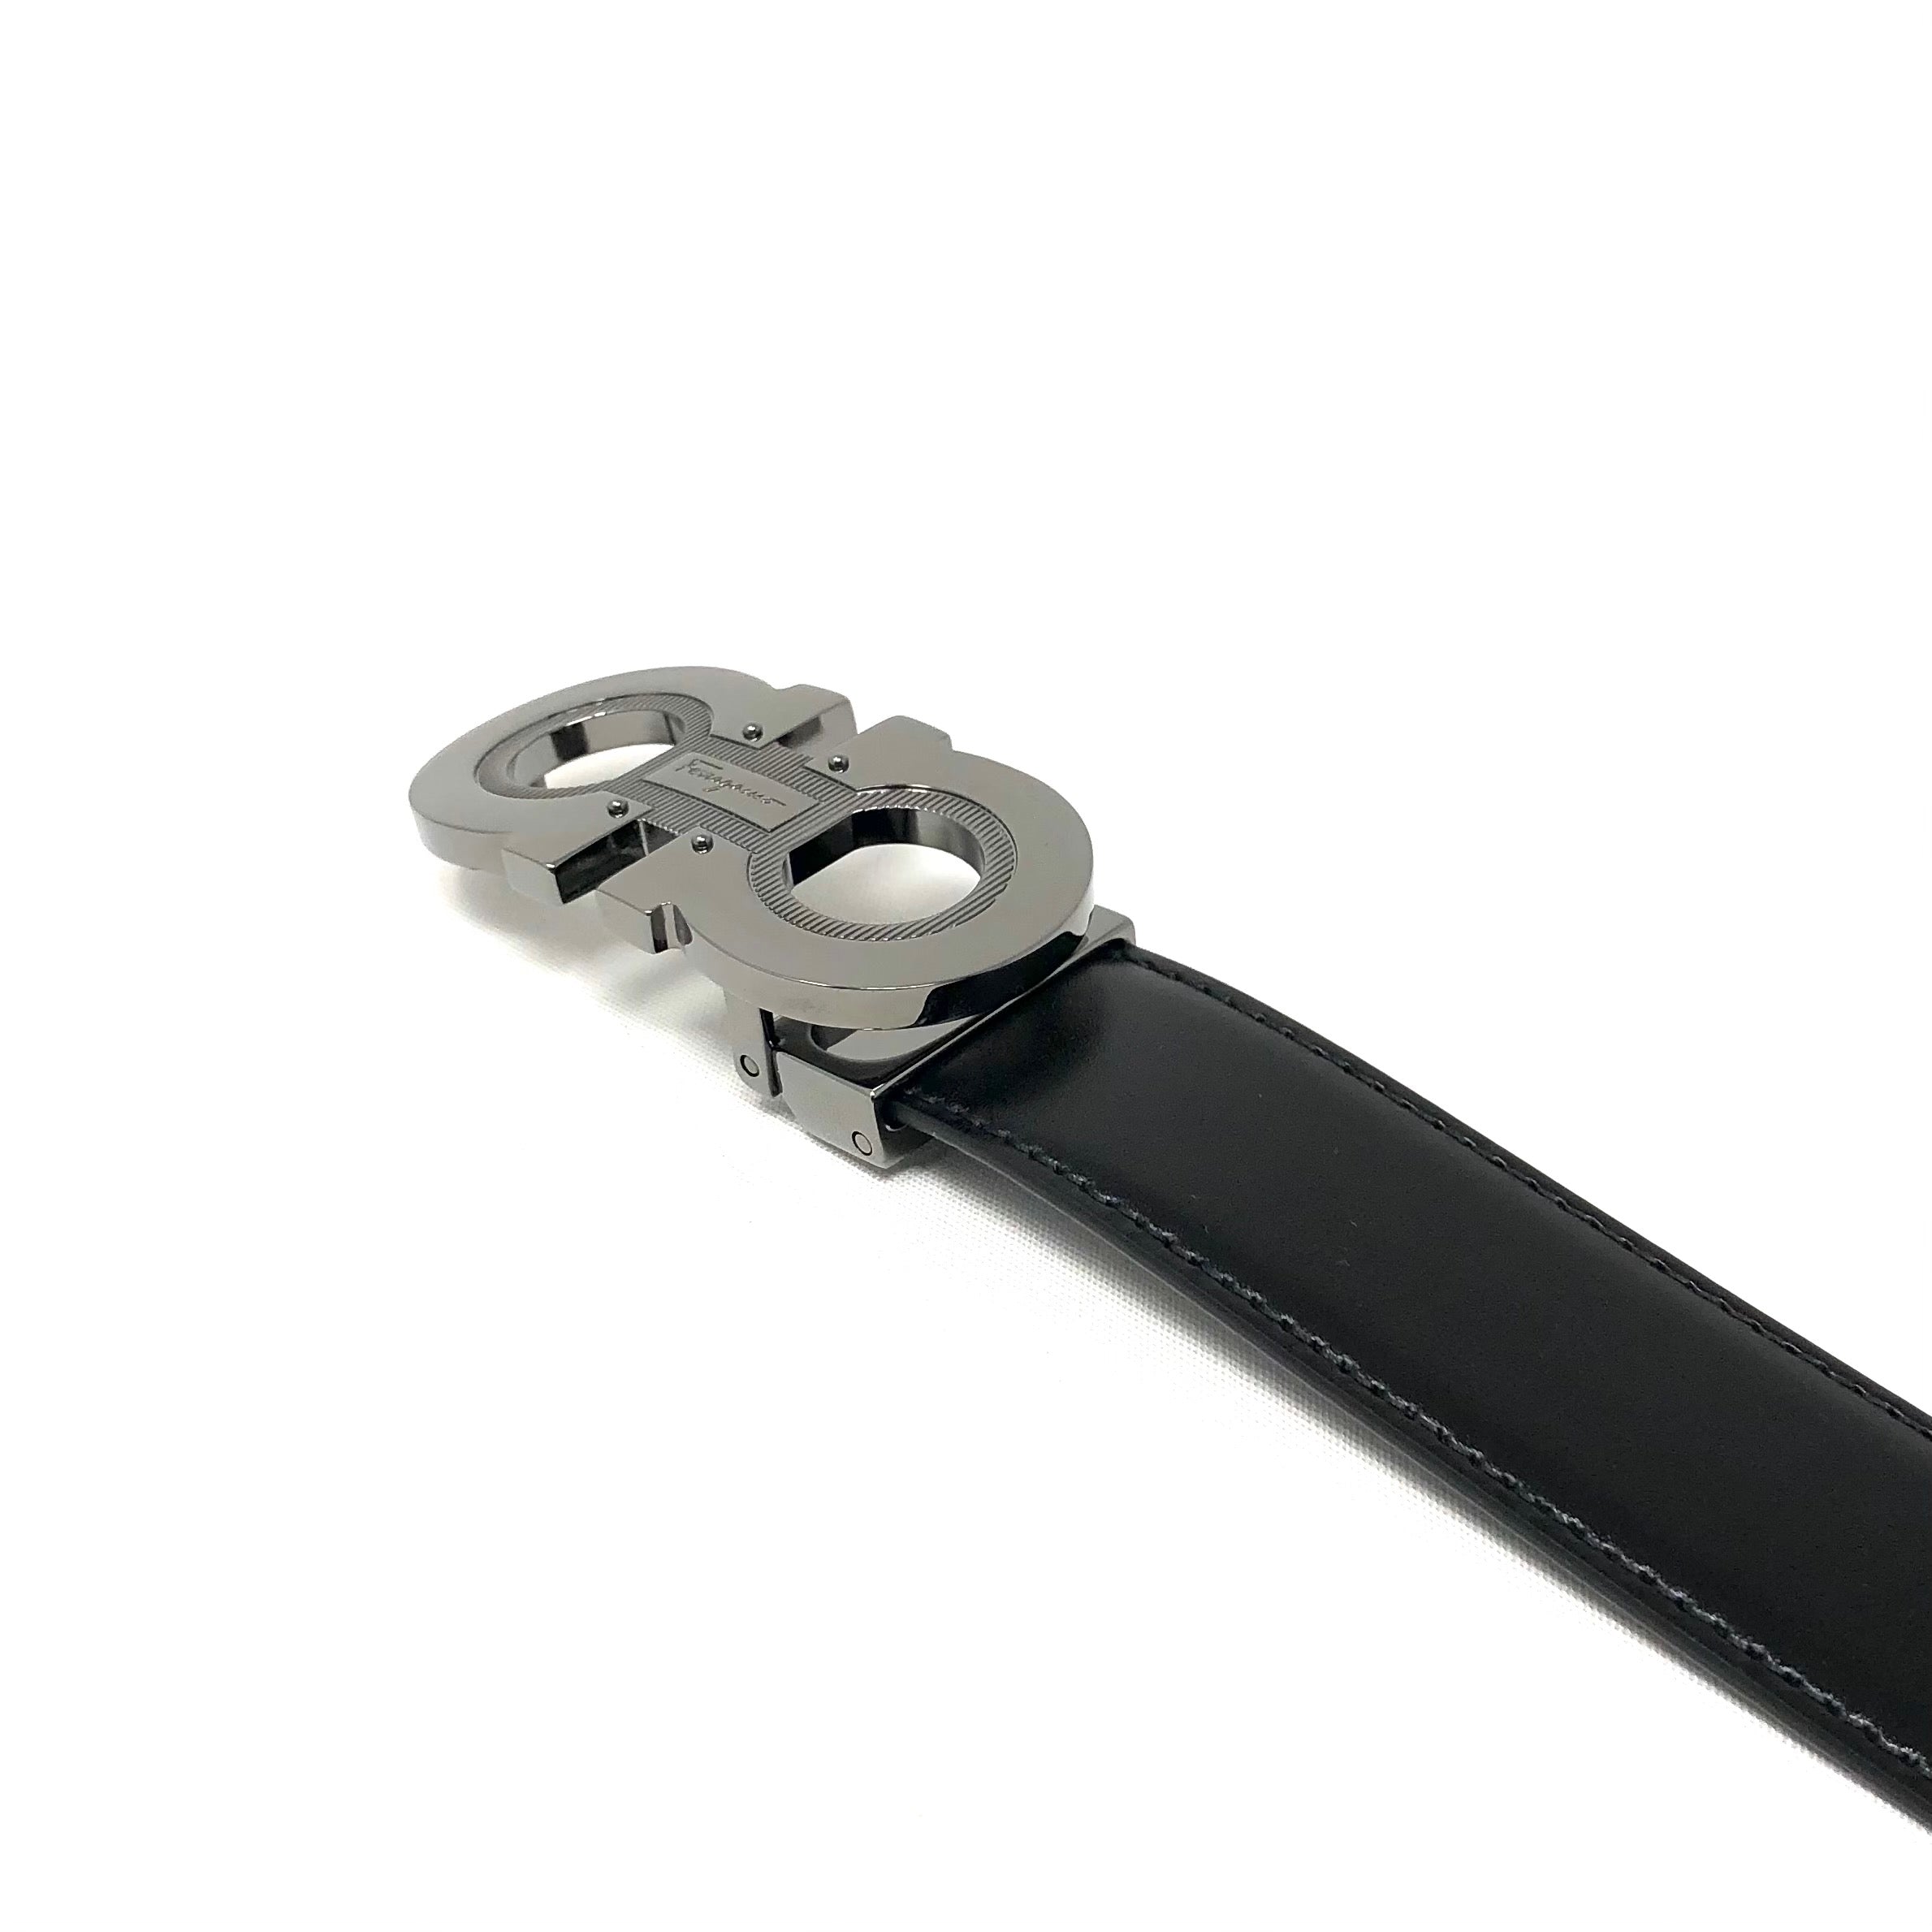 Ferragamo Black Leather Adjustable & Reversible belt – NYC Designer Outlet